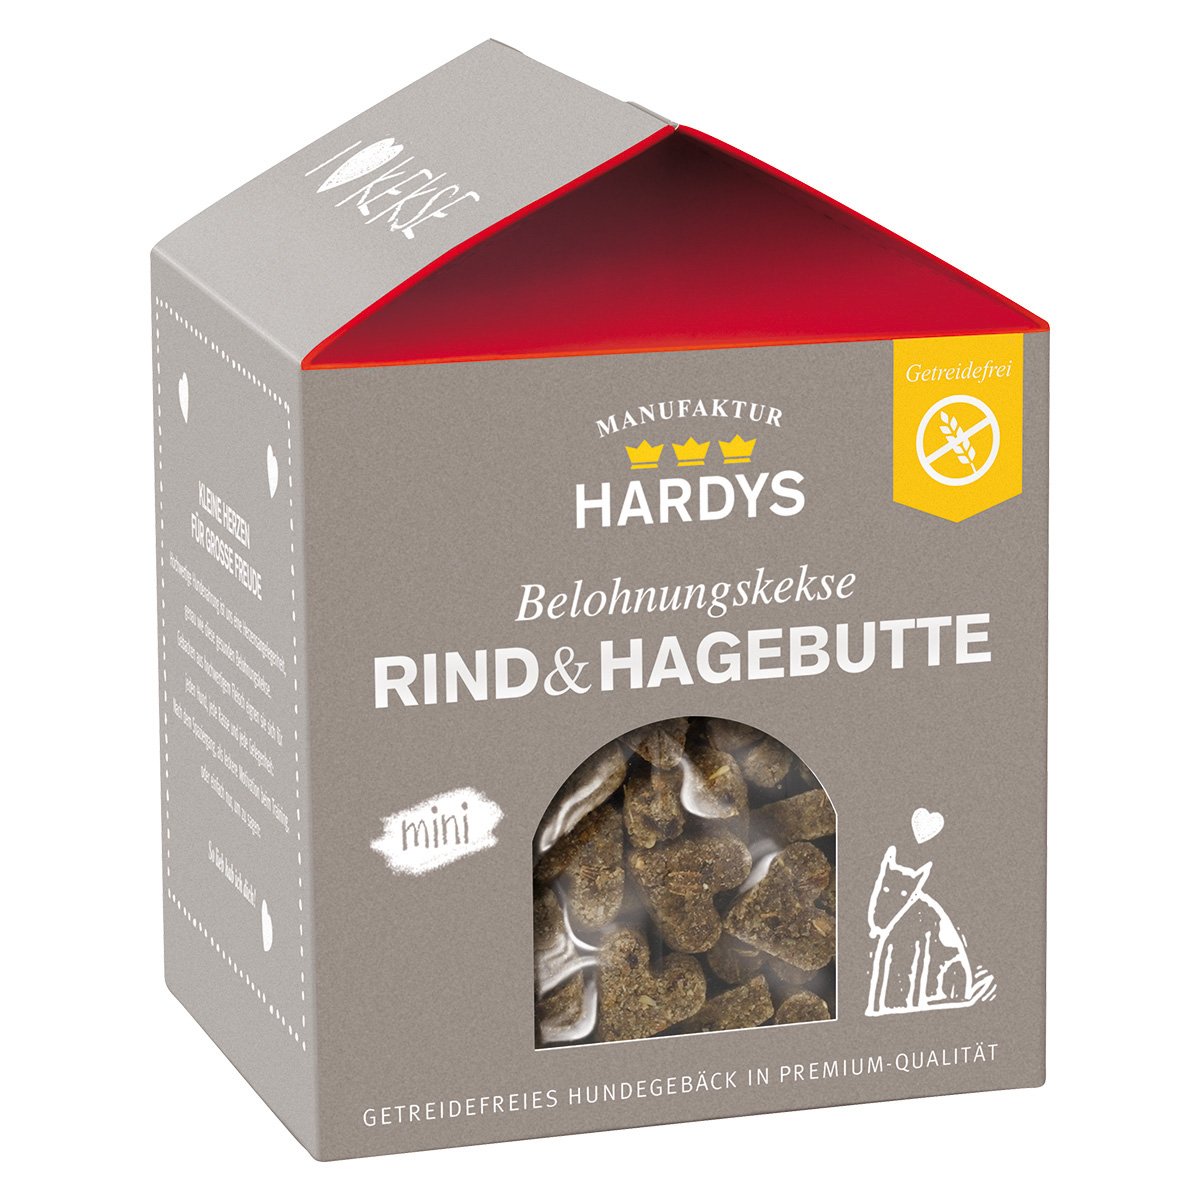 HARDYS Belohnungskekse, Rind & Hagebutte, Mini, 1 x 125 g - glücksthaler.ch